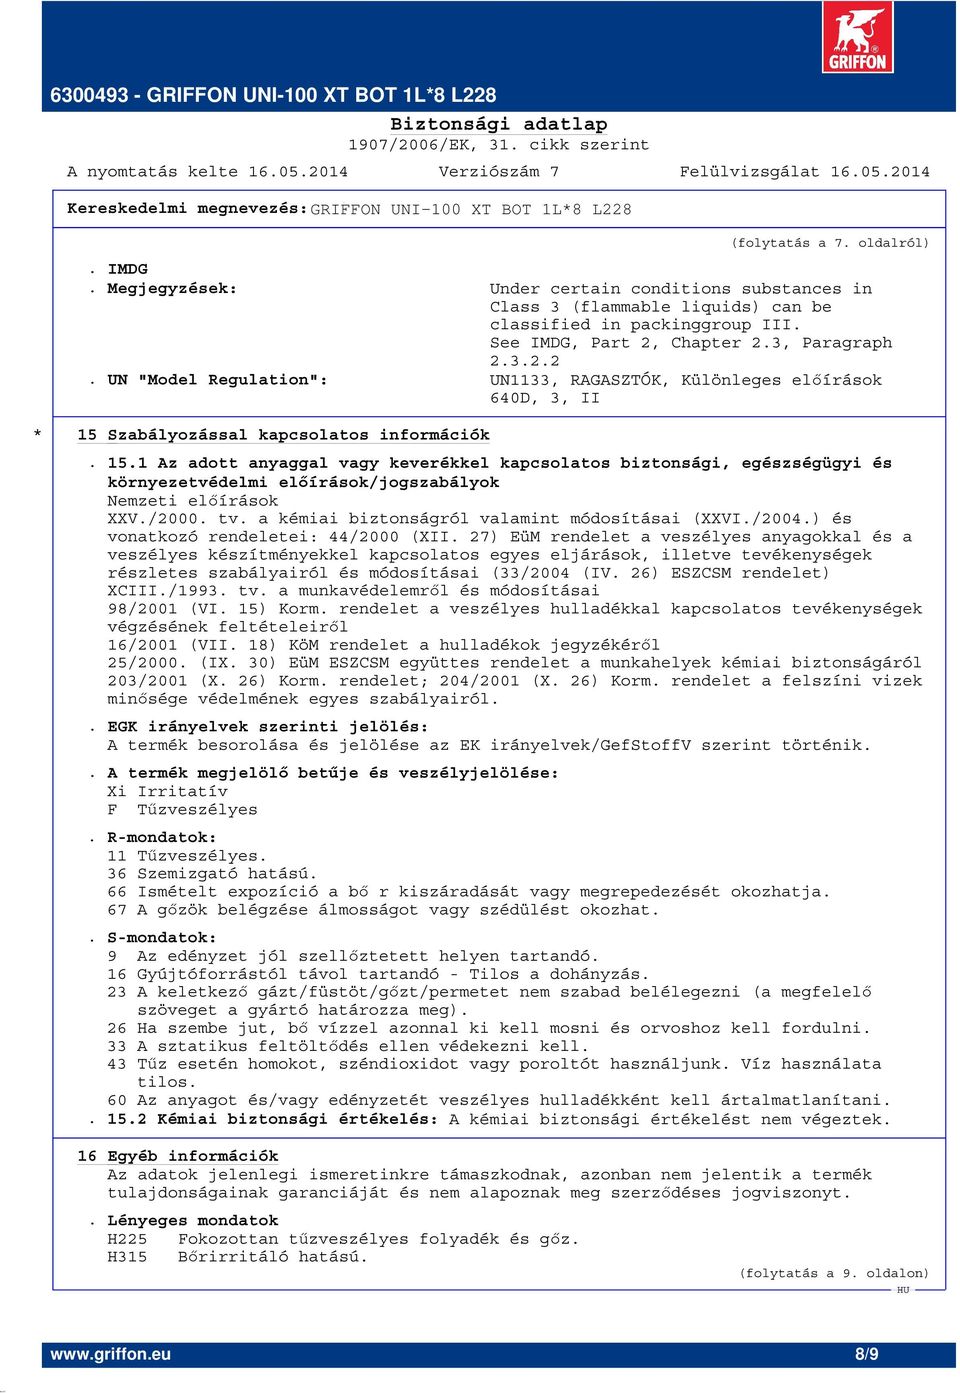 Szabályozással kapcsolatos információk. 15.1 Az adott anyaggal vagy keverékkel kapcsolatos biztonsági, egészségügyi és környezetvédelmi előírások/jogszabályok Nemzeti előírások XXV./2000. tv.